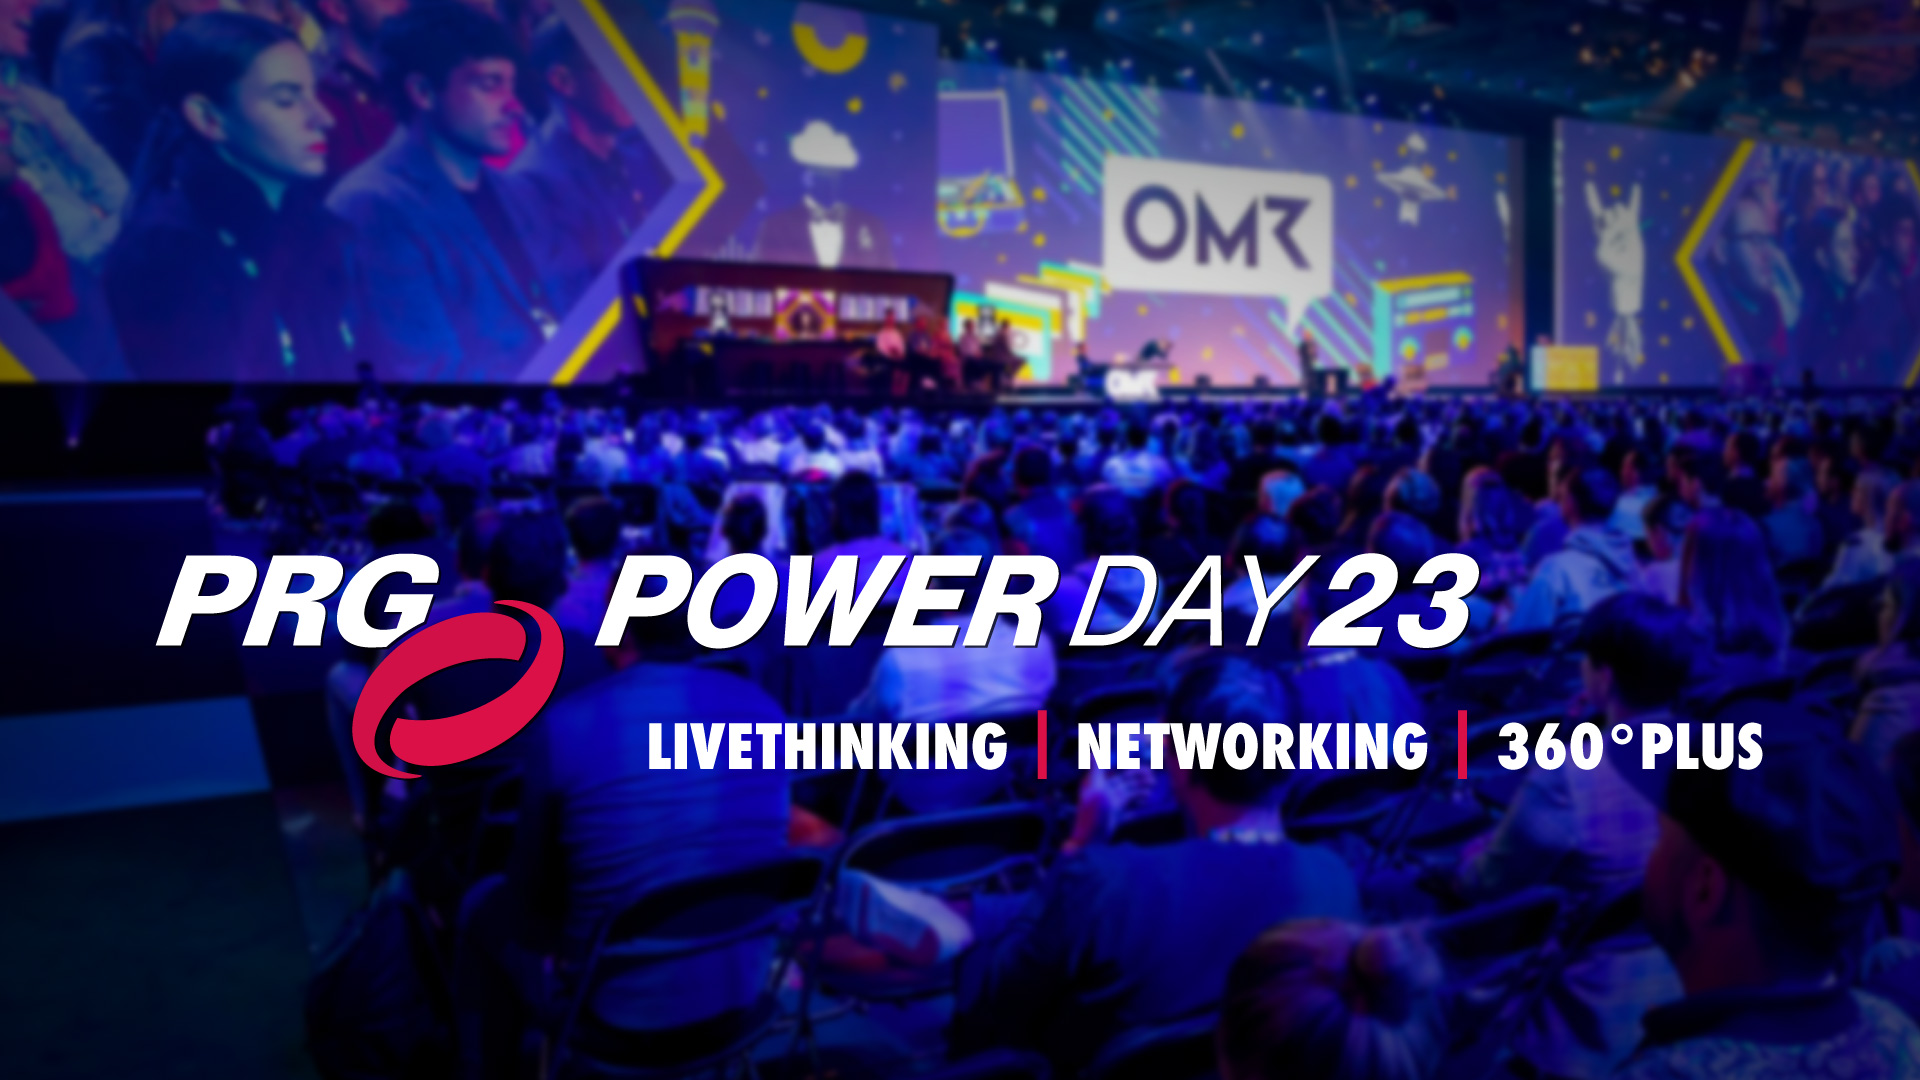 Der erste PRG Powerday 2023 fand am 19. Juni 2023 in Köln statt und begeisterte die Gäste mit einem vielfältigen Programm rund um Livethinking, Networking und 360° Plus.